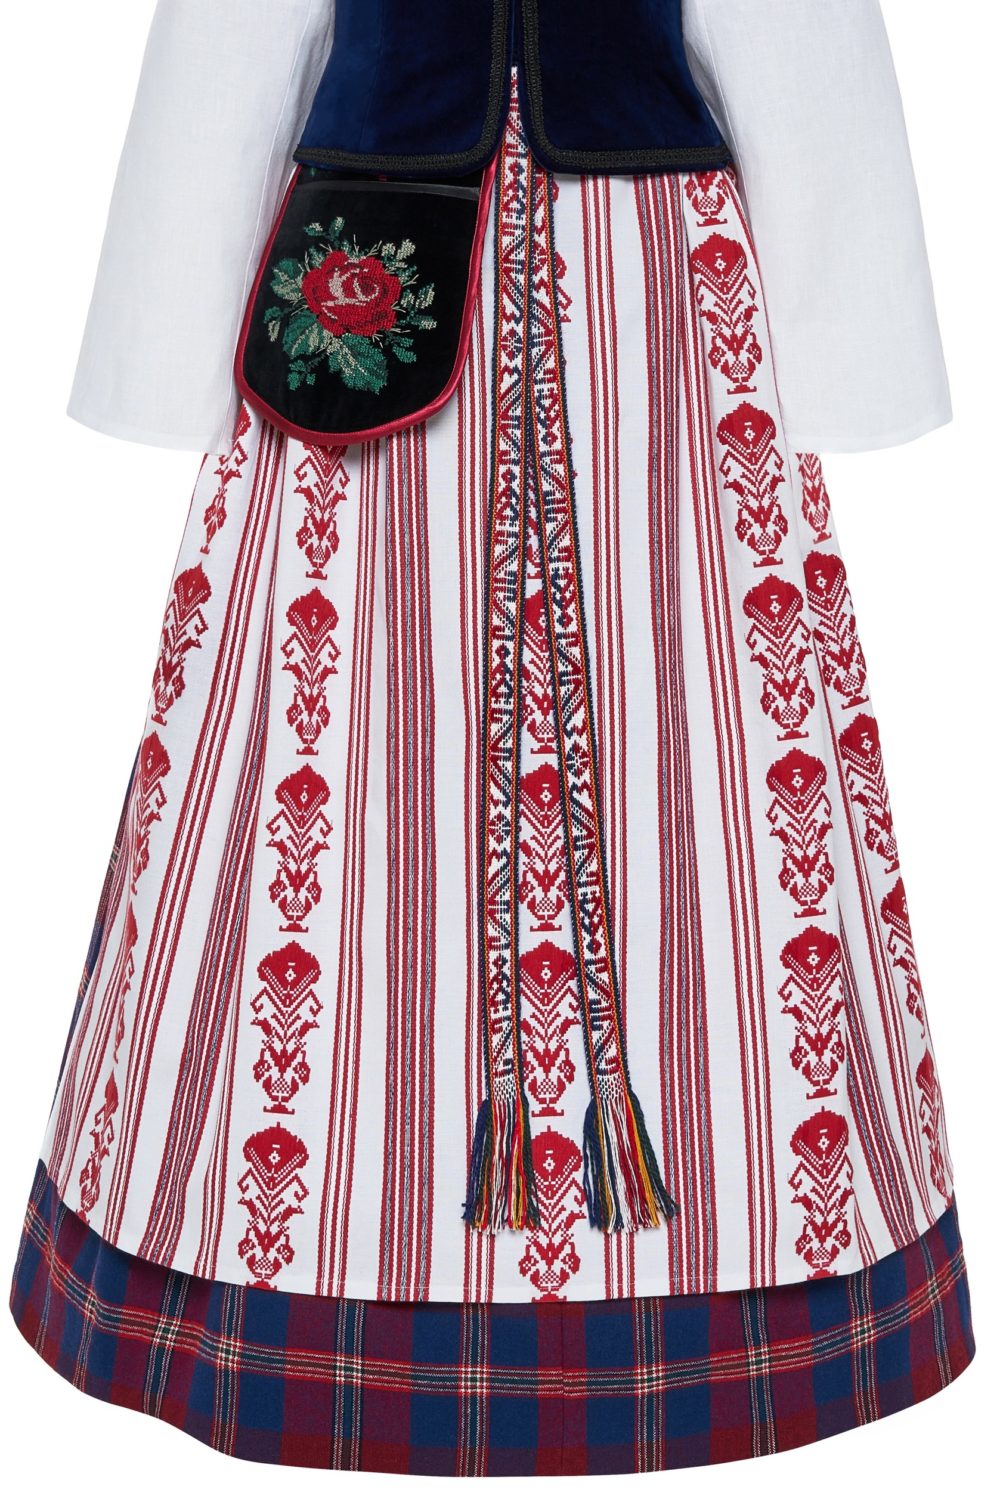 Klaipėdos krašto moteriškas tautinis kostiumas KKLP6